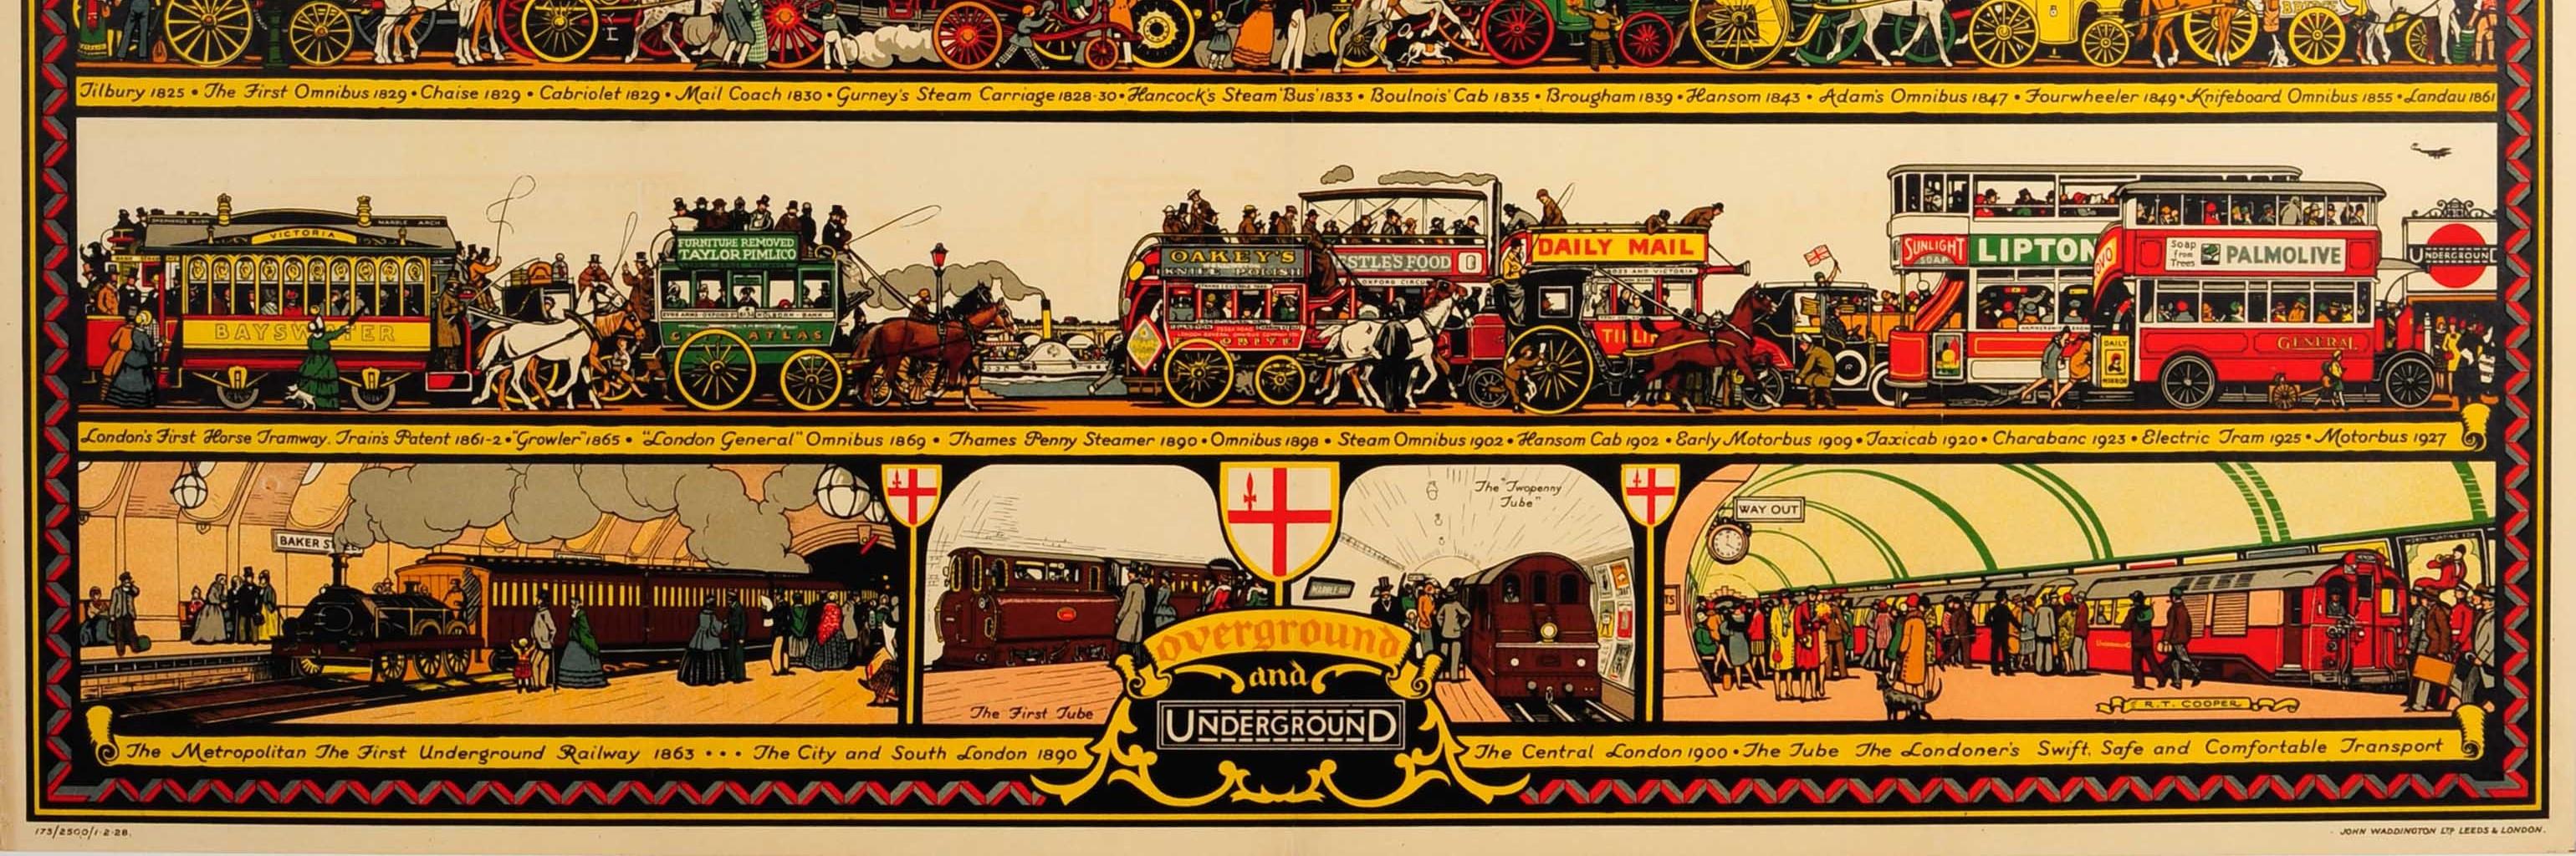 Original-Werbeplakat für die öffentlichen Verkehrsmittel London Overground und London Underground - The Londoner's Transport Throughout the Ages - von dem bekannten Künstler und Plakatgestalter Richard T. Cooper (1884-1957), der von 1924 bis 1935